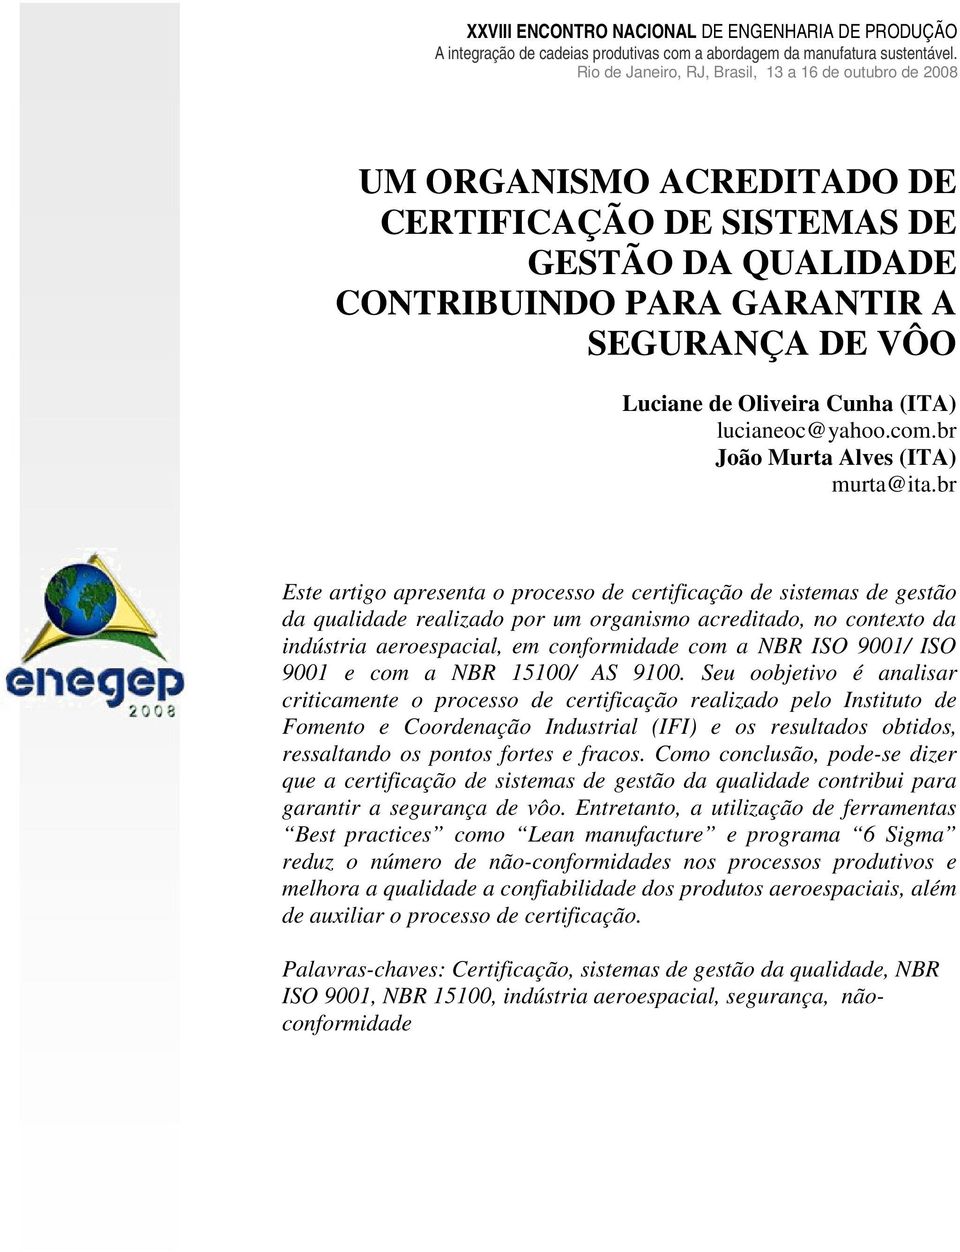 br Este artigo apresenta o processo de certificação de sistemas de gestão da qualidade realizado por um organismo acreditado, no contexto da indústria aeroespacial, em conformidade com a NBR ISO